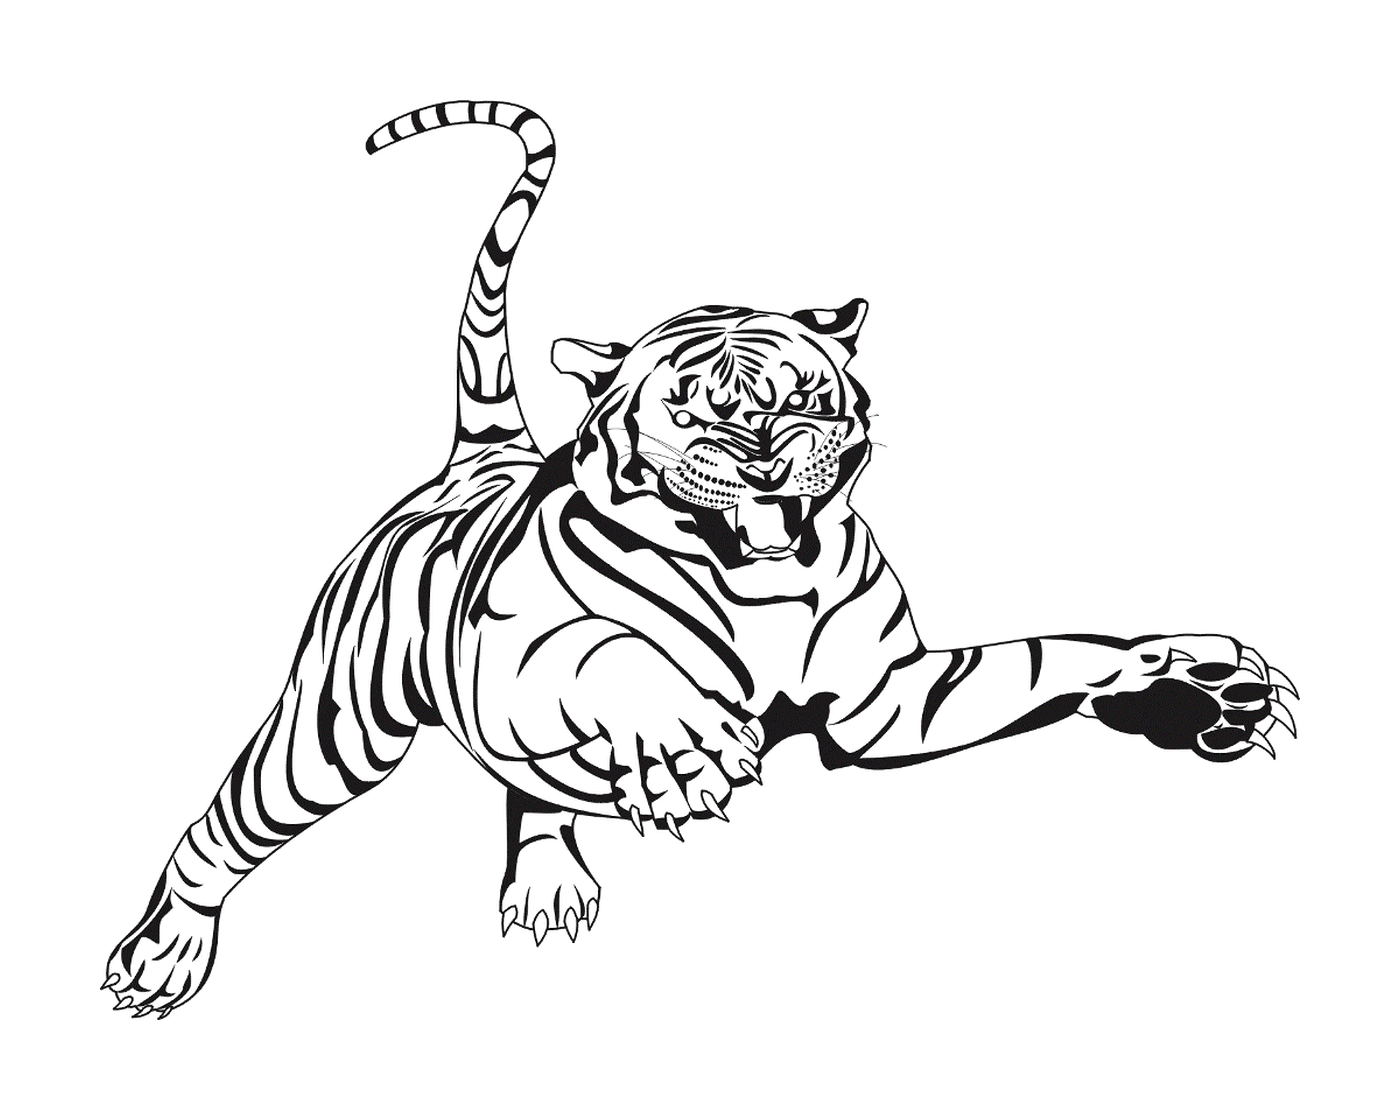  Тигр посреди прыжка 